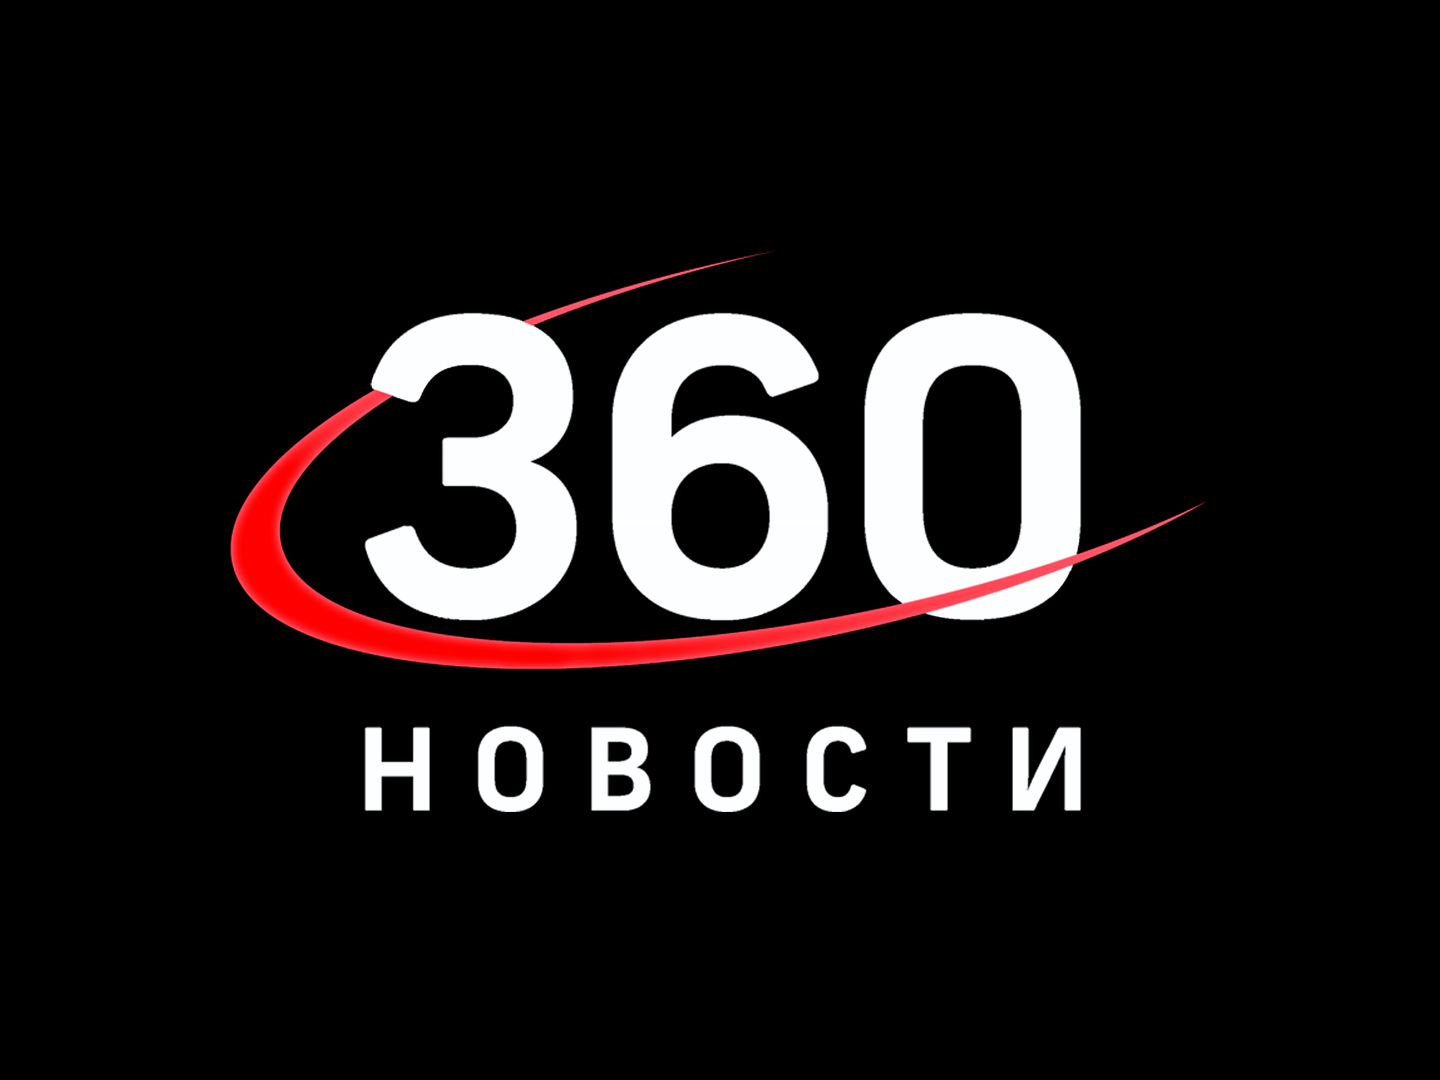 Новости 360